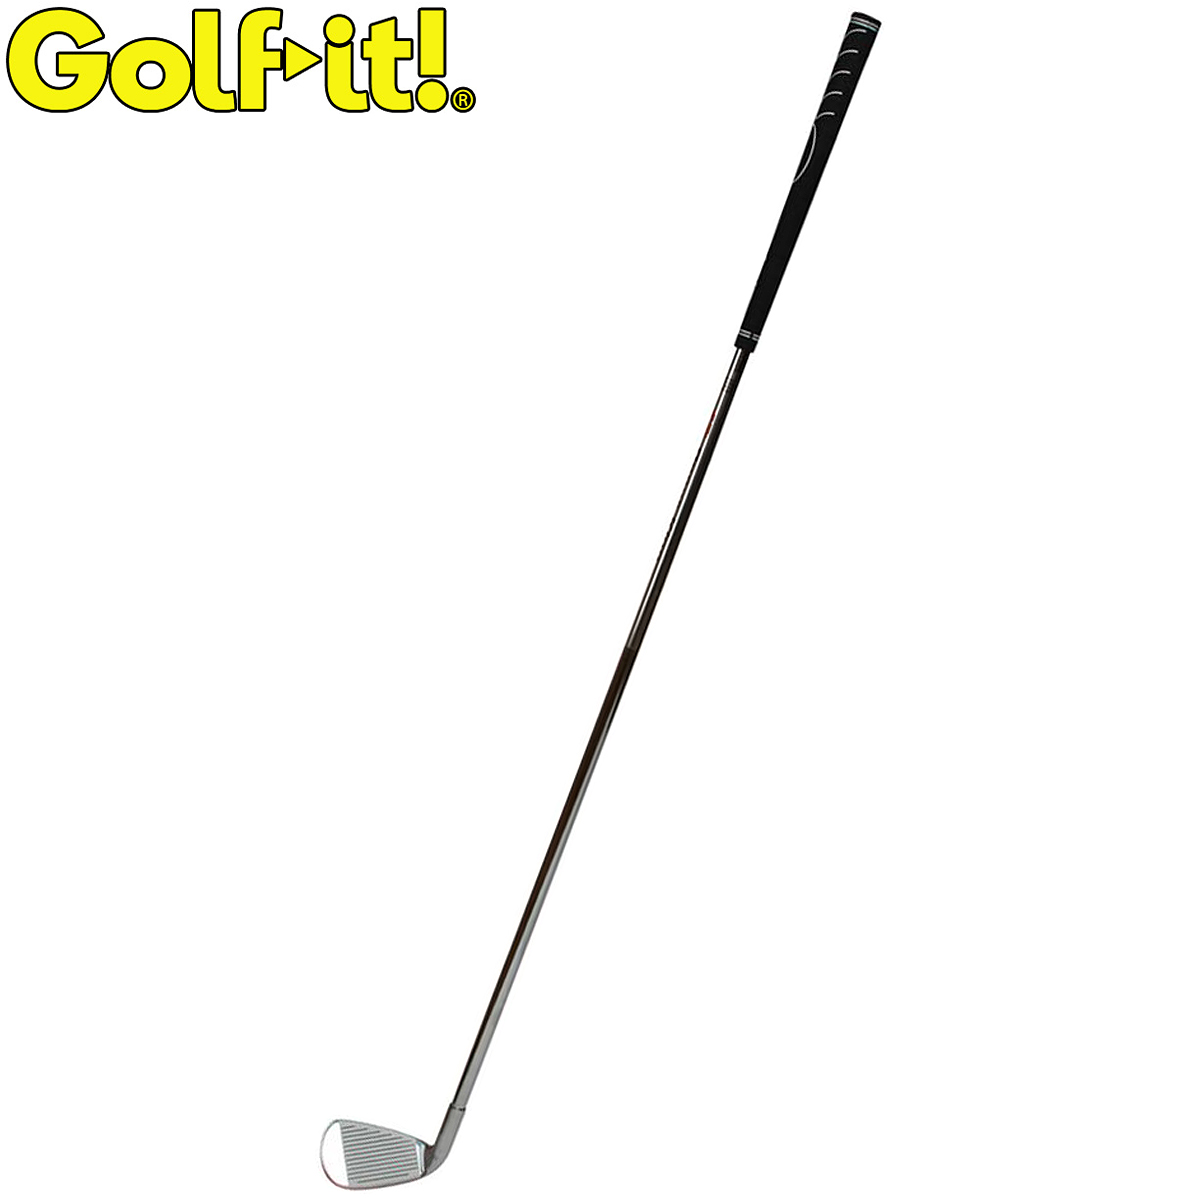 鉄芯シャフトでパワーアップ Golfit お洒落 ゴルフイット LiTE ライト 日本正規品 M-232 メガパワーディスタンス ついに再販開始 ゴルフスイング練習用品 ロング アイアンタイプ